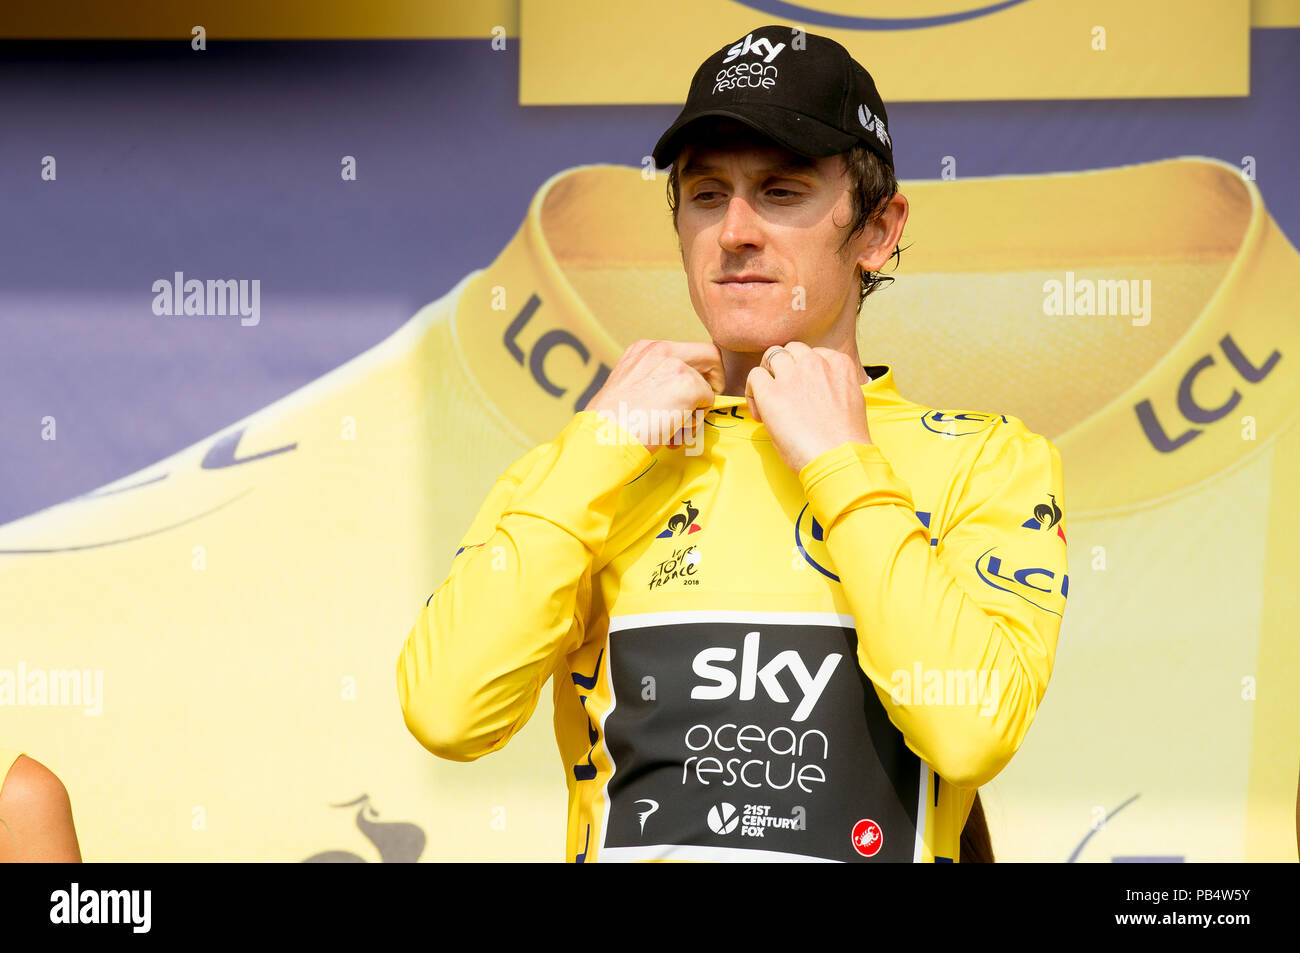 L'équipe Sky's Geraint Thomas célèbre sur le podium après l'étape 18 du Tour de France 2018. Banque D'Images